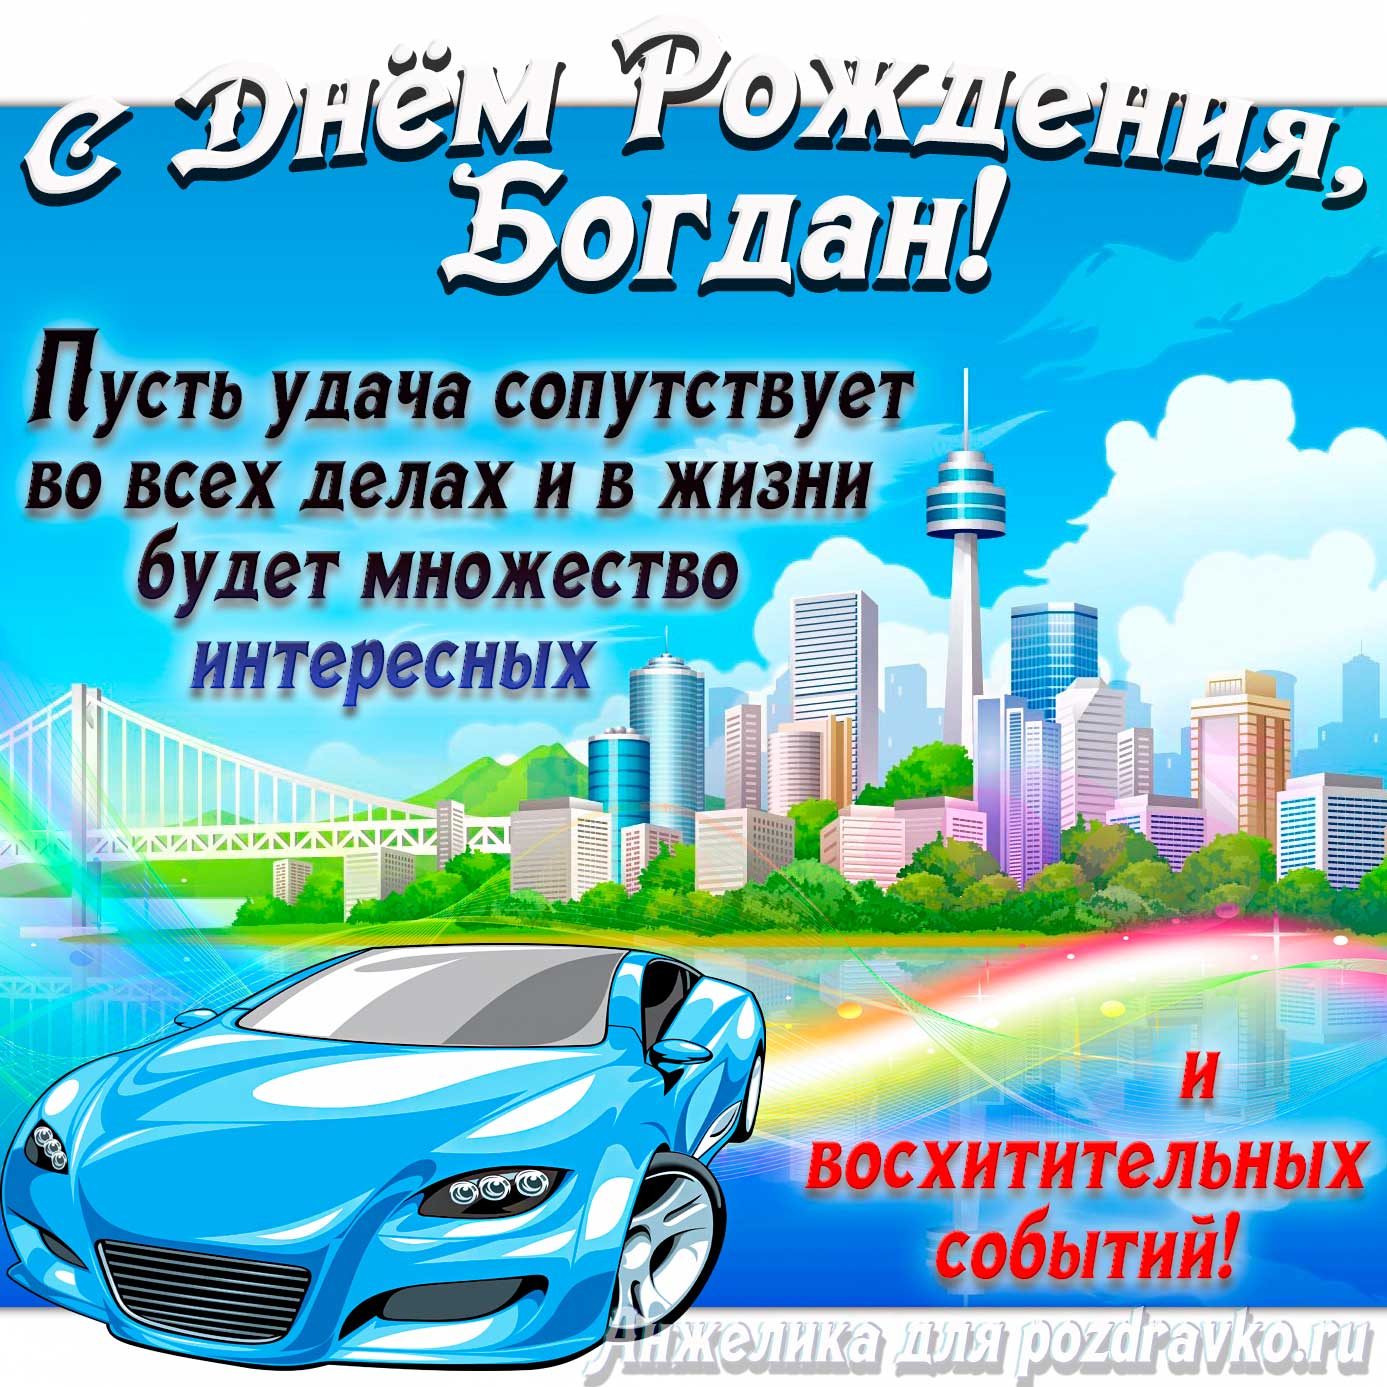 Открытка - с Днём Рождения Богдан с голубой машиной и пожеланием. Скачать бесплатно или отправить картинку.